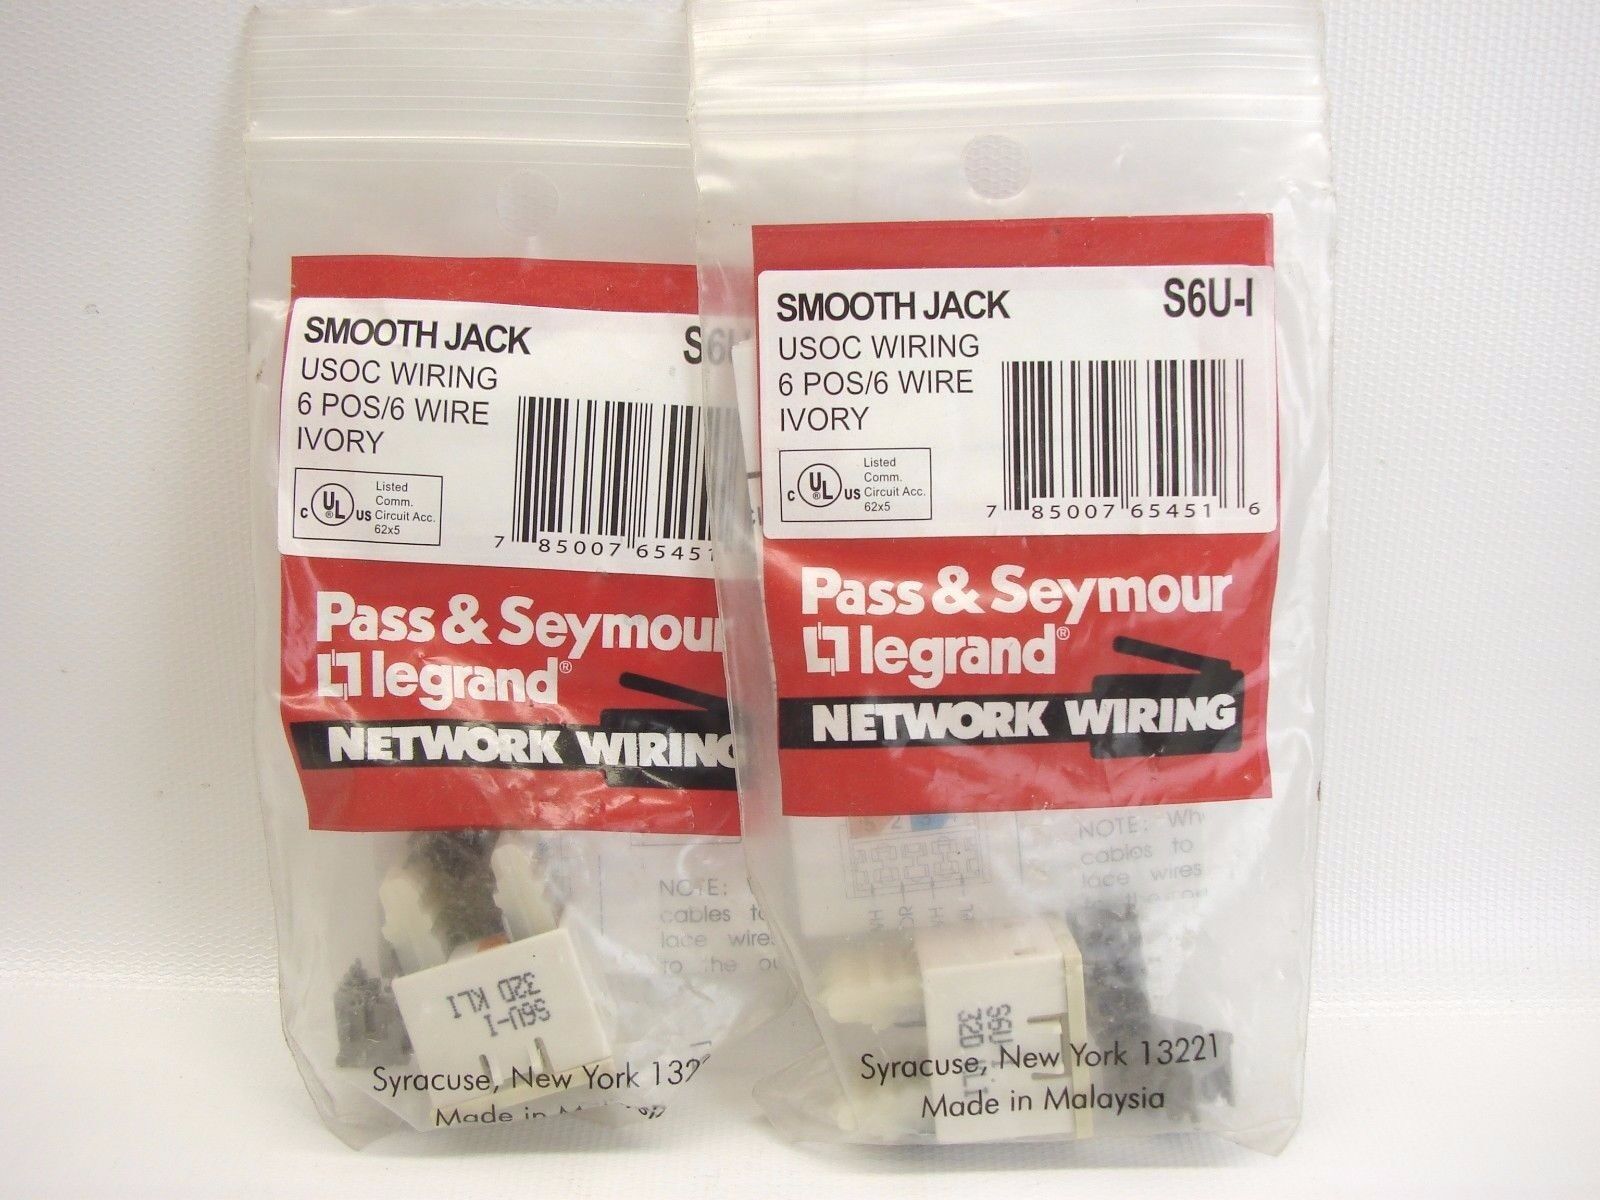 (2) Pass & Seymour S6U-I USOC Wiring 6 POS/6 Wire Ivory Smooth Jack (T56)